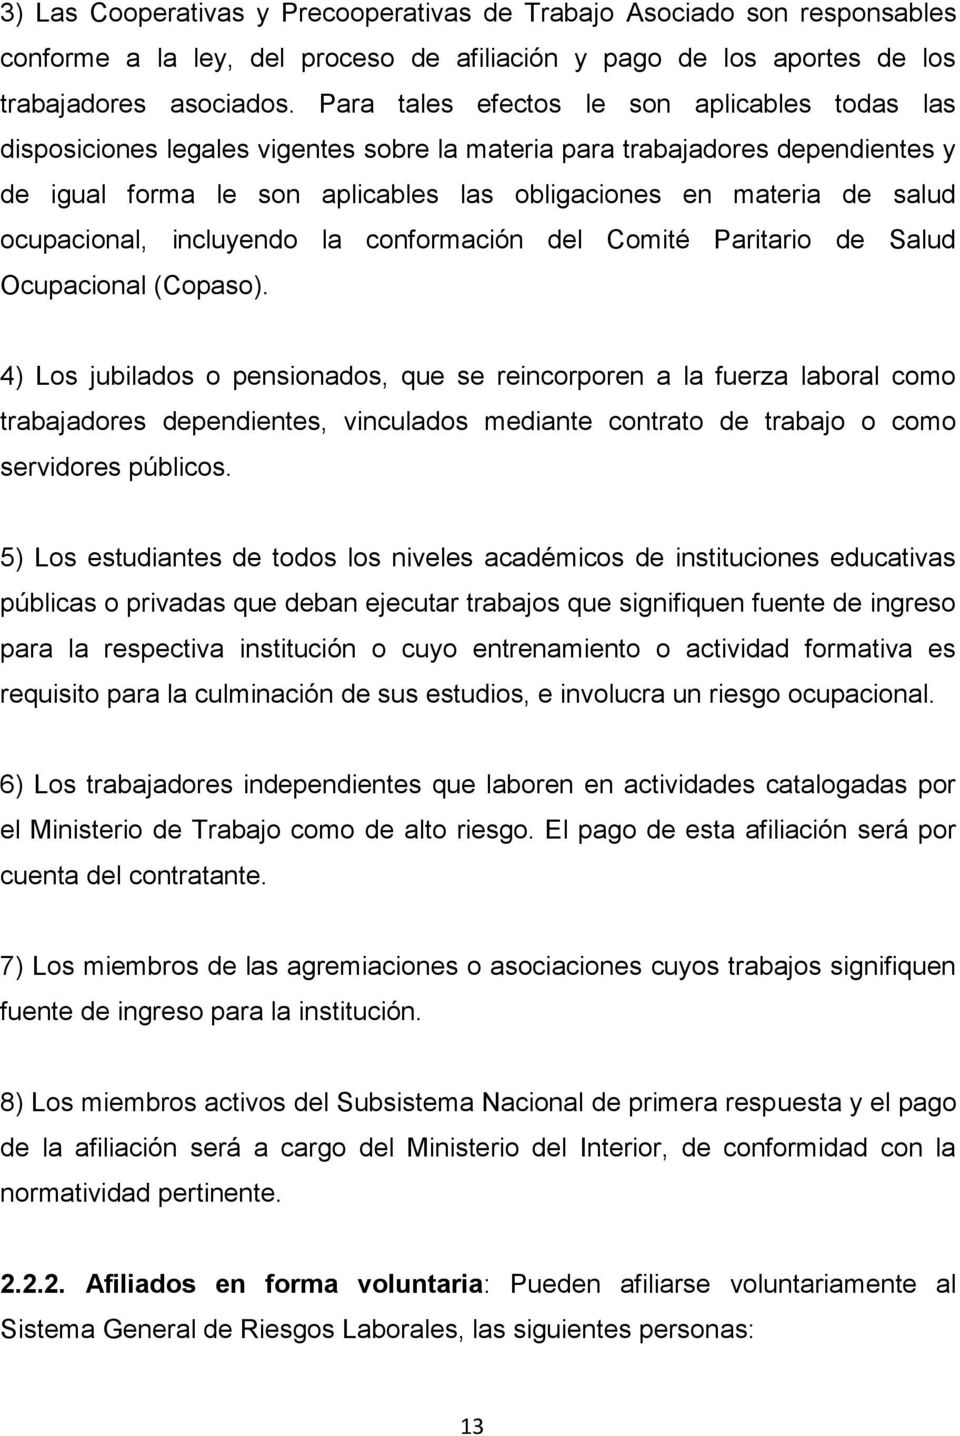 ocupacional, incluyendo la conformación del Comité Paritario de Salud Ocupacional (Copaso).